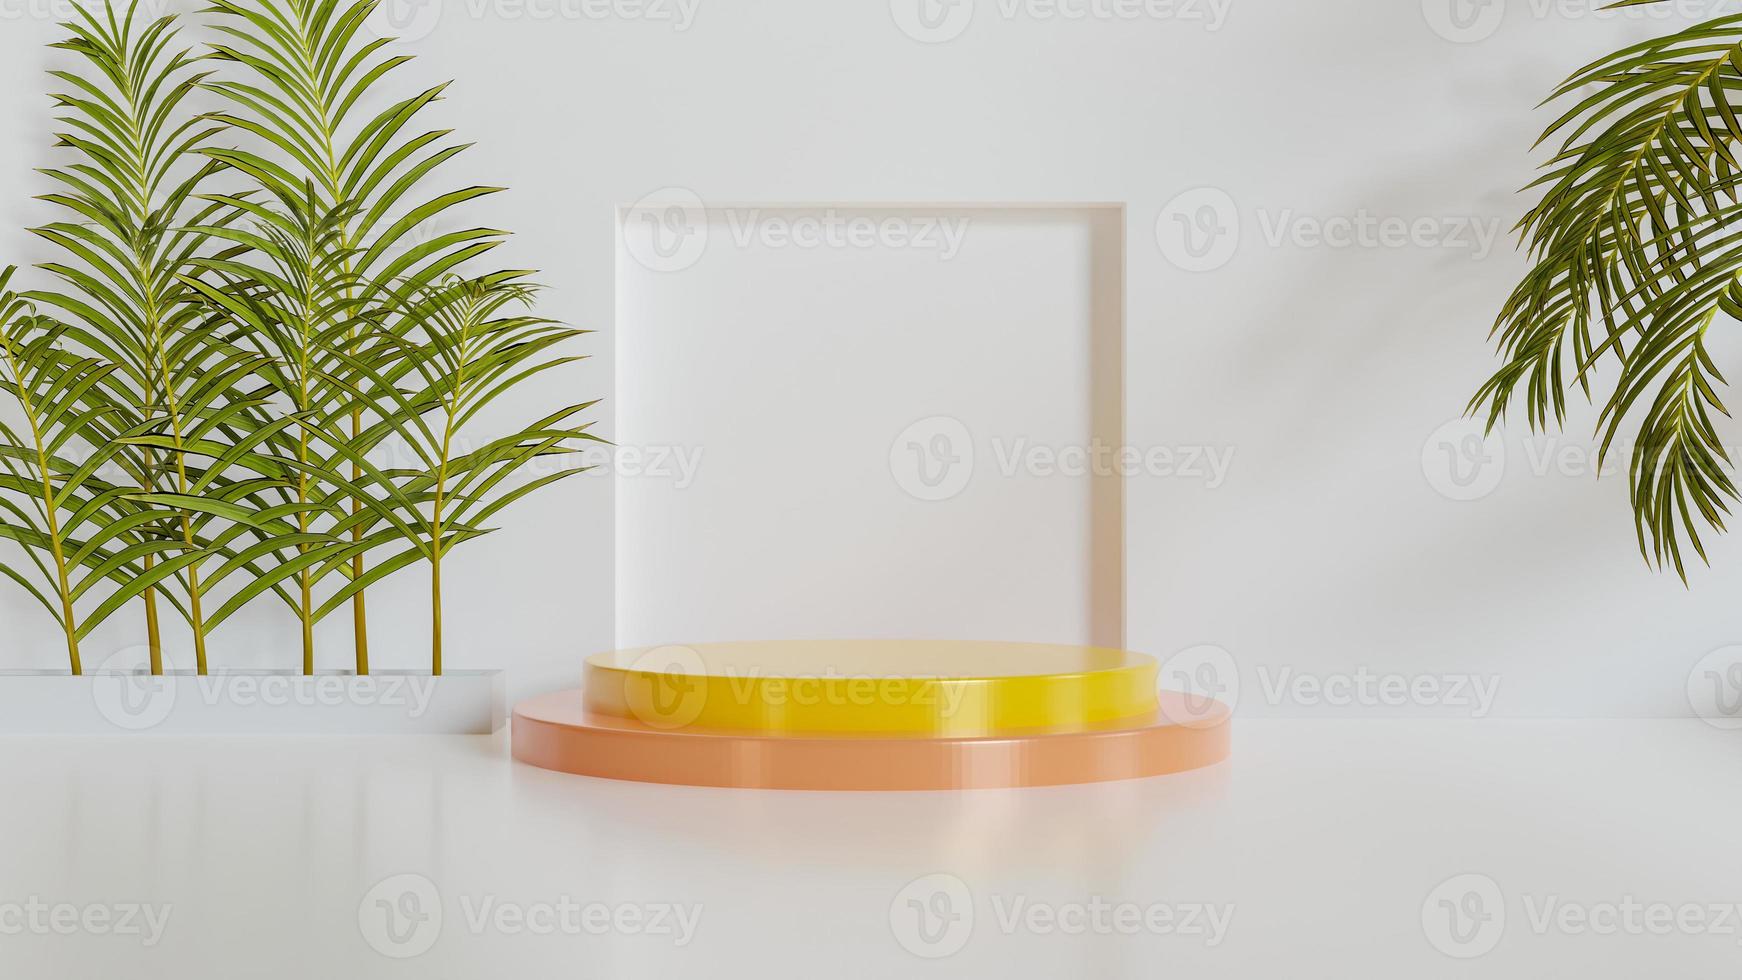 productvertoningspodium met palmblad op witte achtergrond. 3D render foto